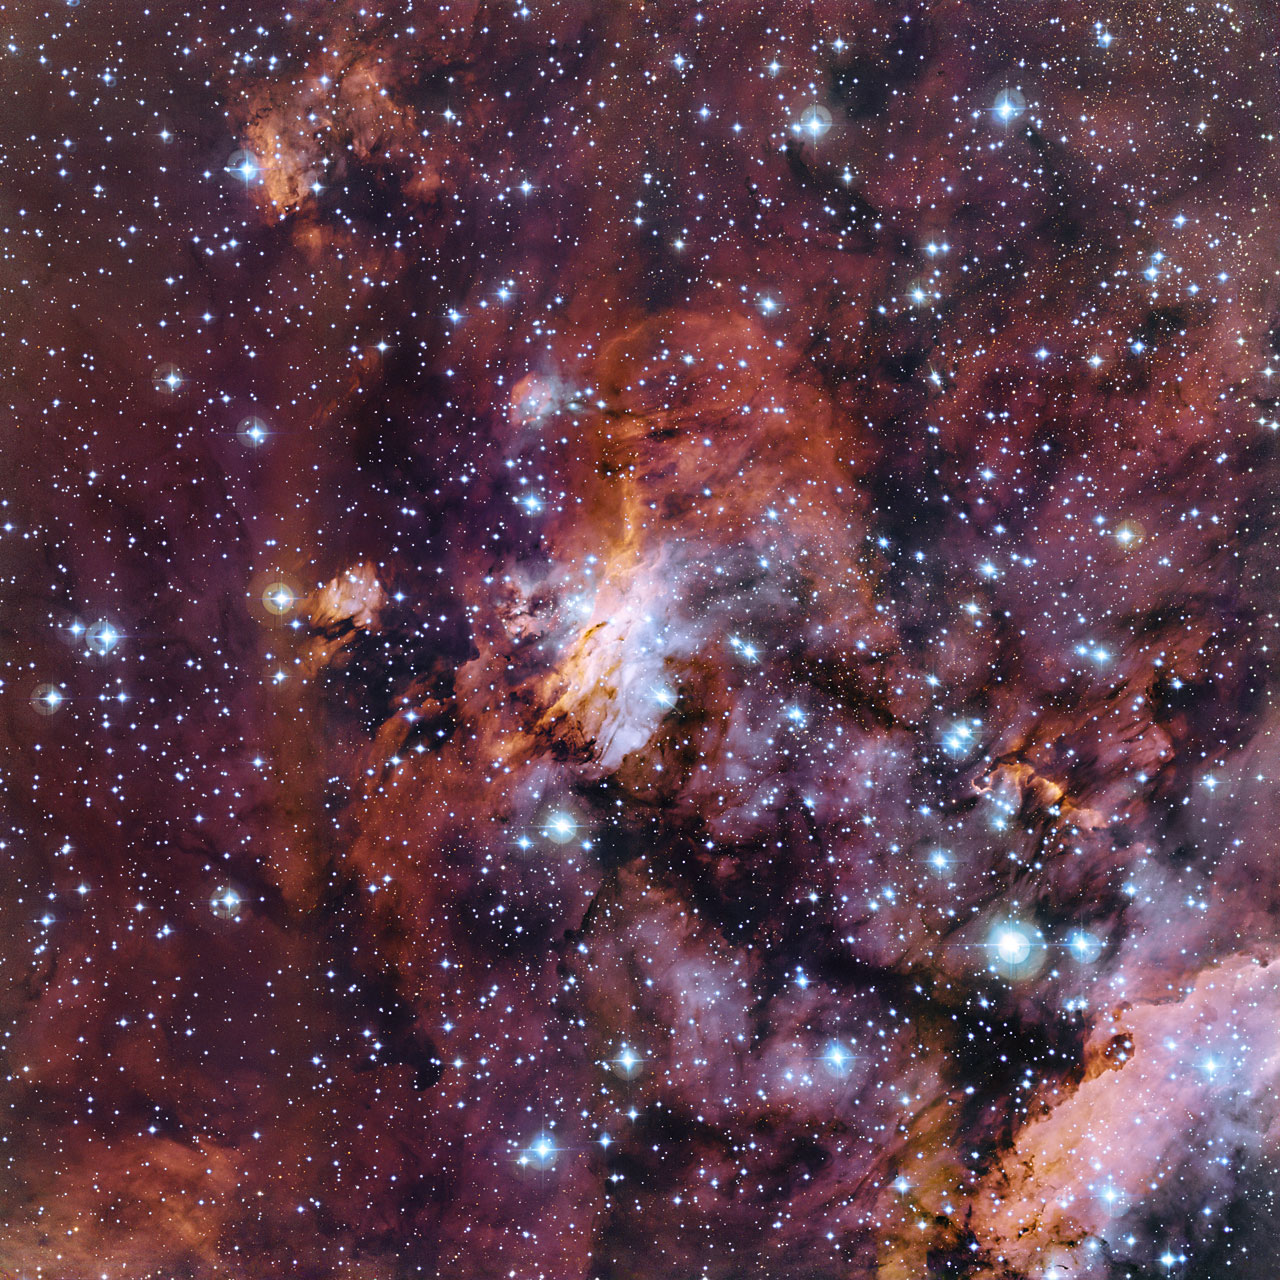 The Prawn Nebula in close-up